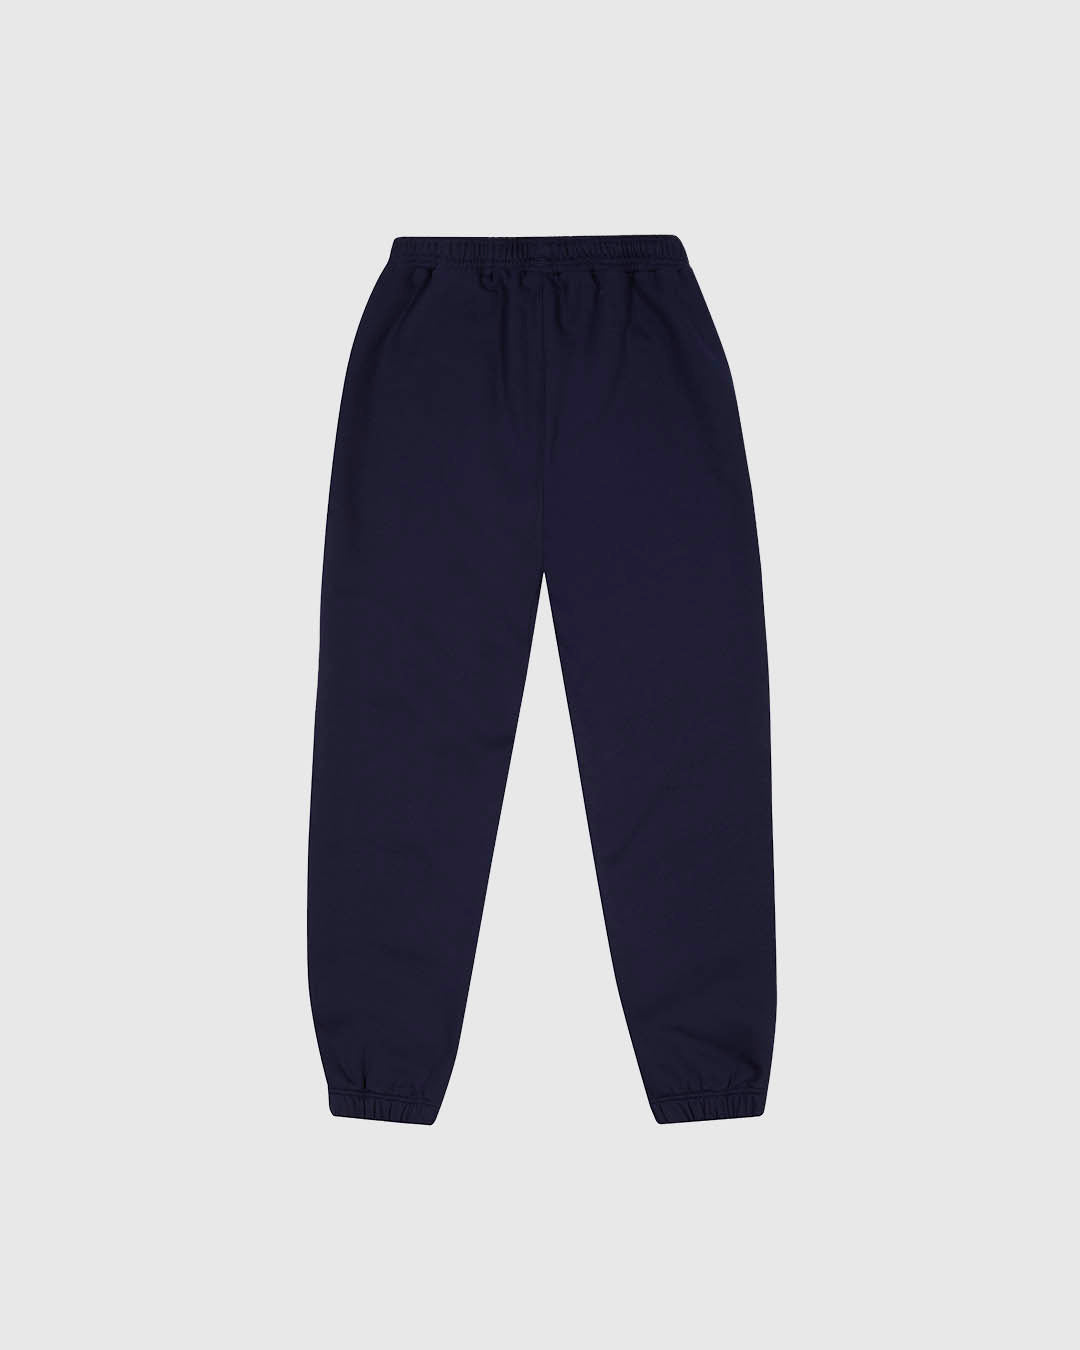 PFC: 002-4 - Men's Sweatpants - Navy